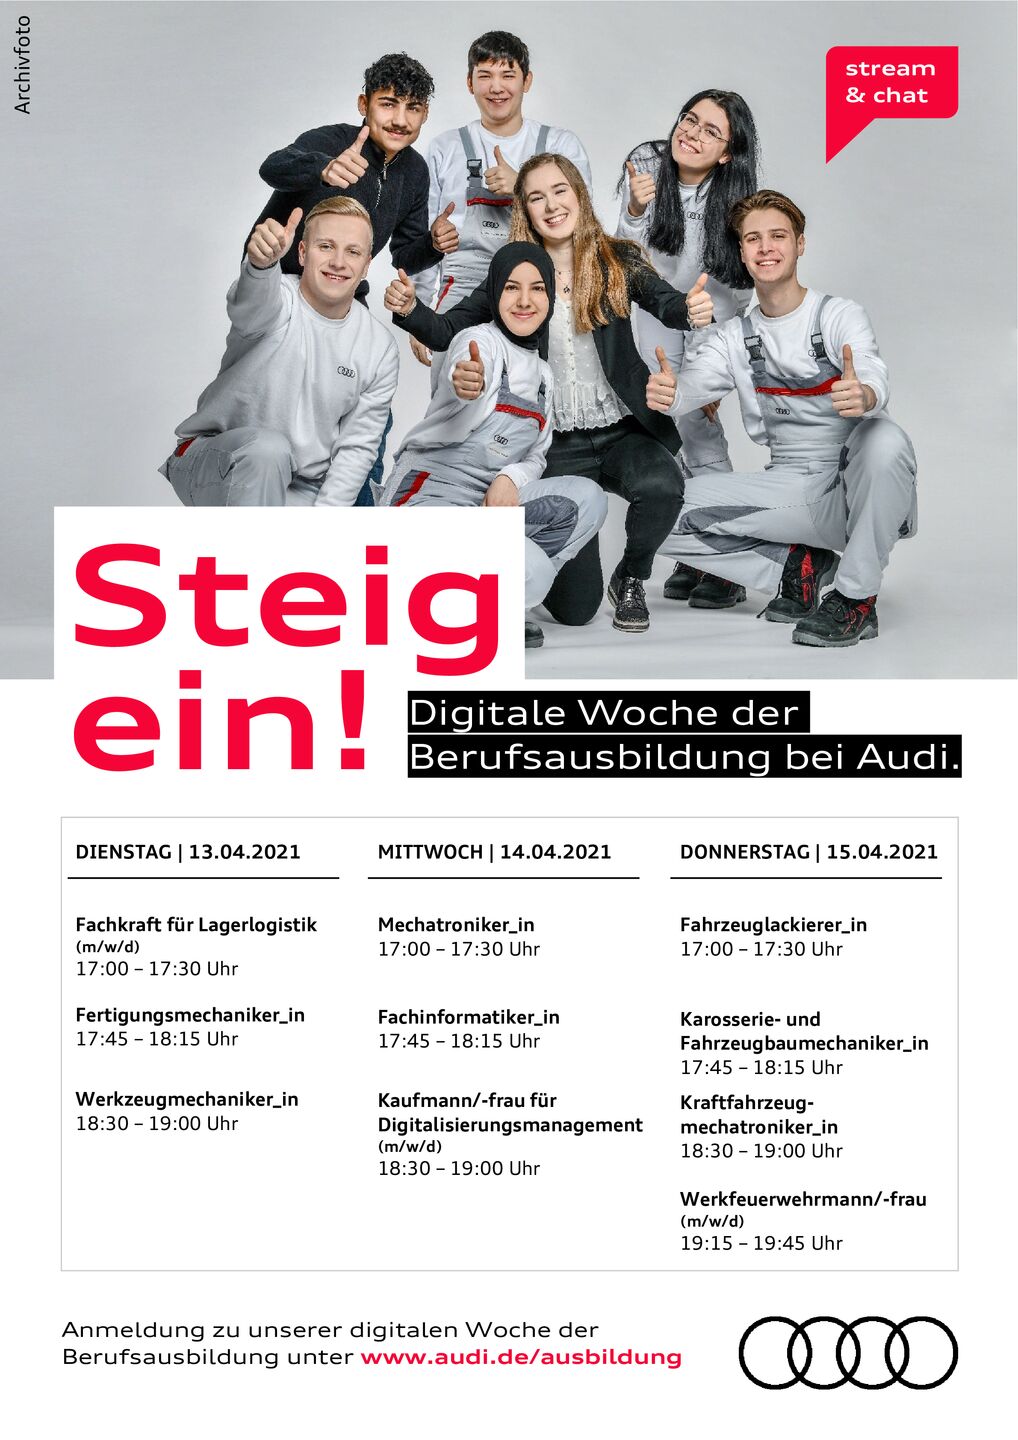 Termine zur digitalen Woche der Berufsausbildung bei Audi Ingolstadt